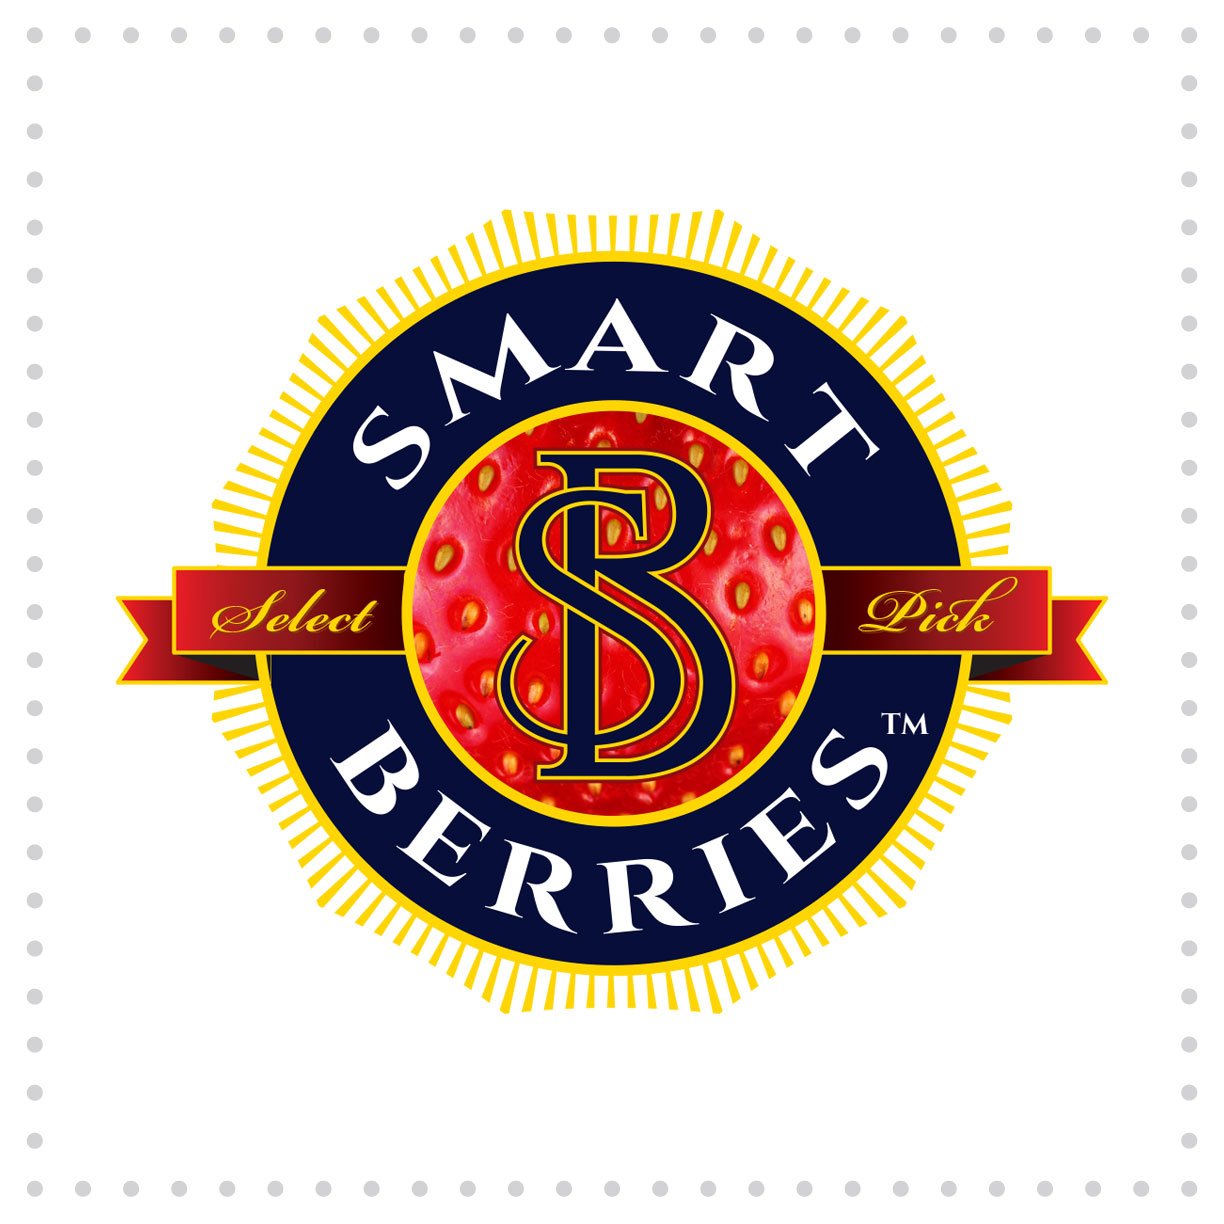 Ball-LogoDesign-SmartBerries.jpg